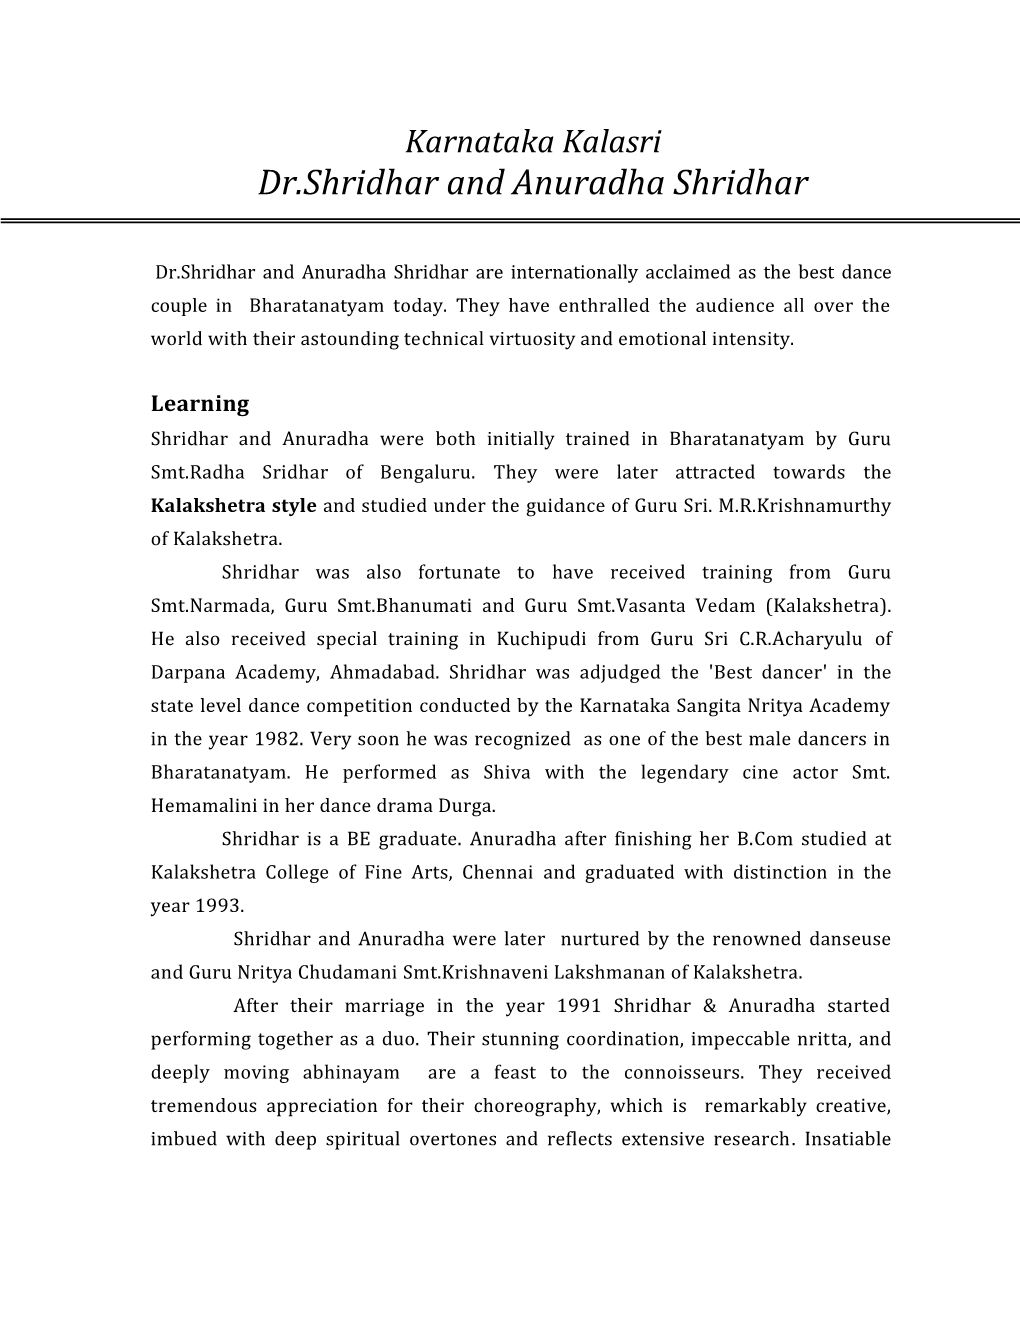 Dr.Shridhar and Anuradha Shridhar